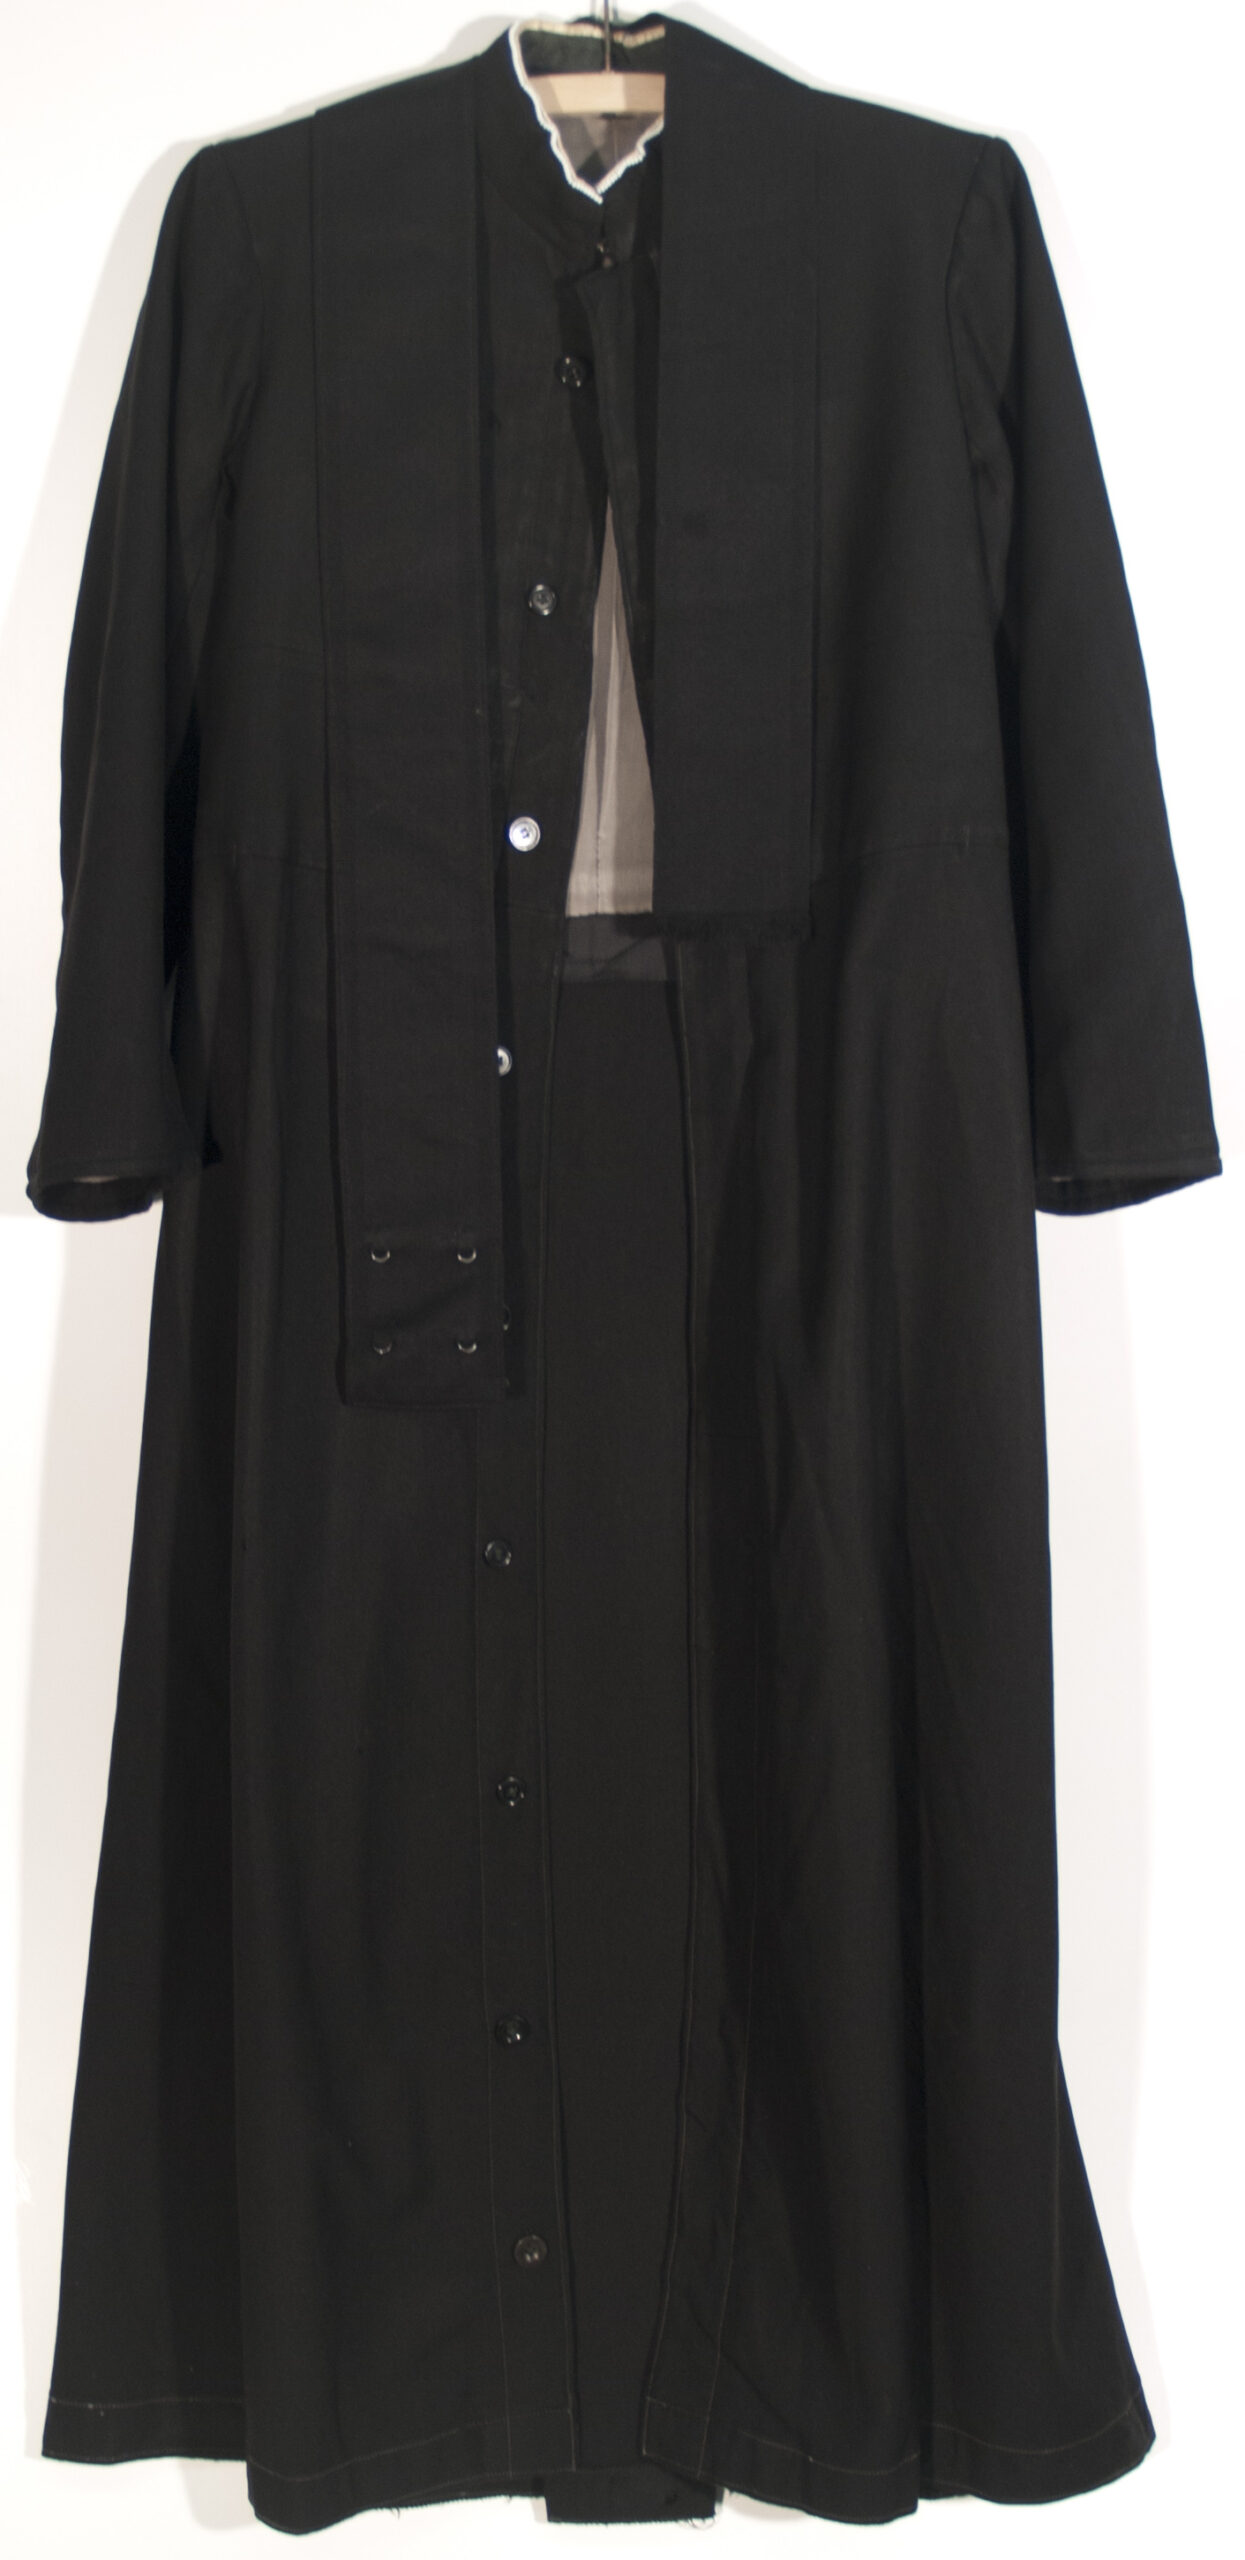 Tagesbekleidung (Kutte) der internen Studenten des Klosters Einsiedeln (Inv.-Nr. Zoe.11.2.01)